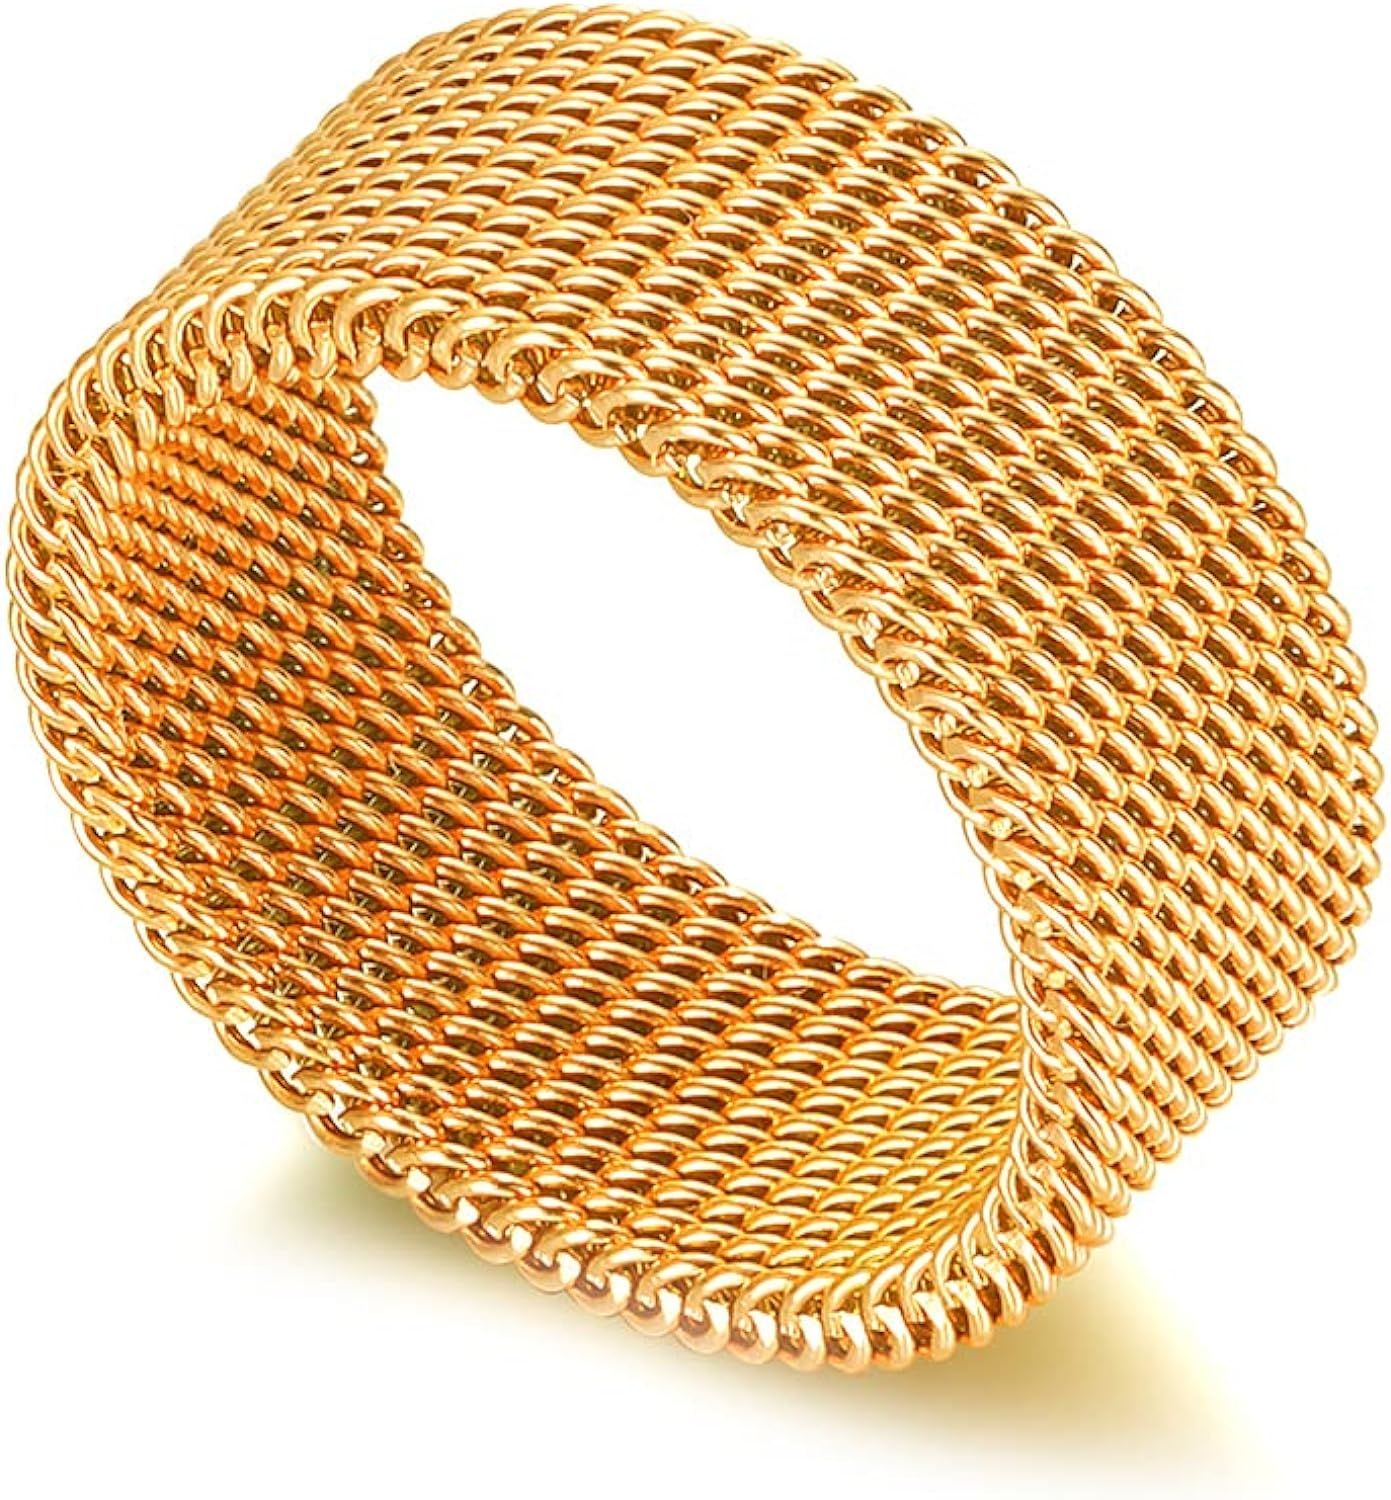 Fusamk Fashion 18K Gold Stainless Steel Mesh Band Ring | Amazon (US)